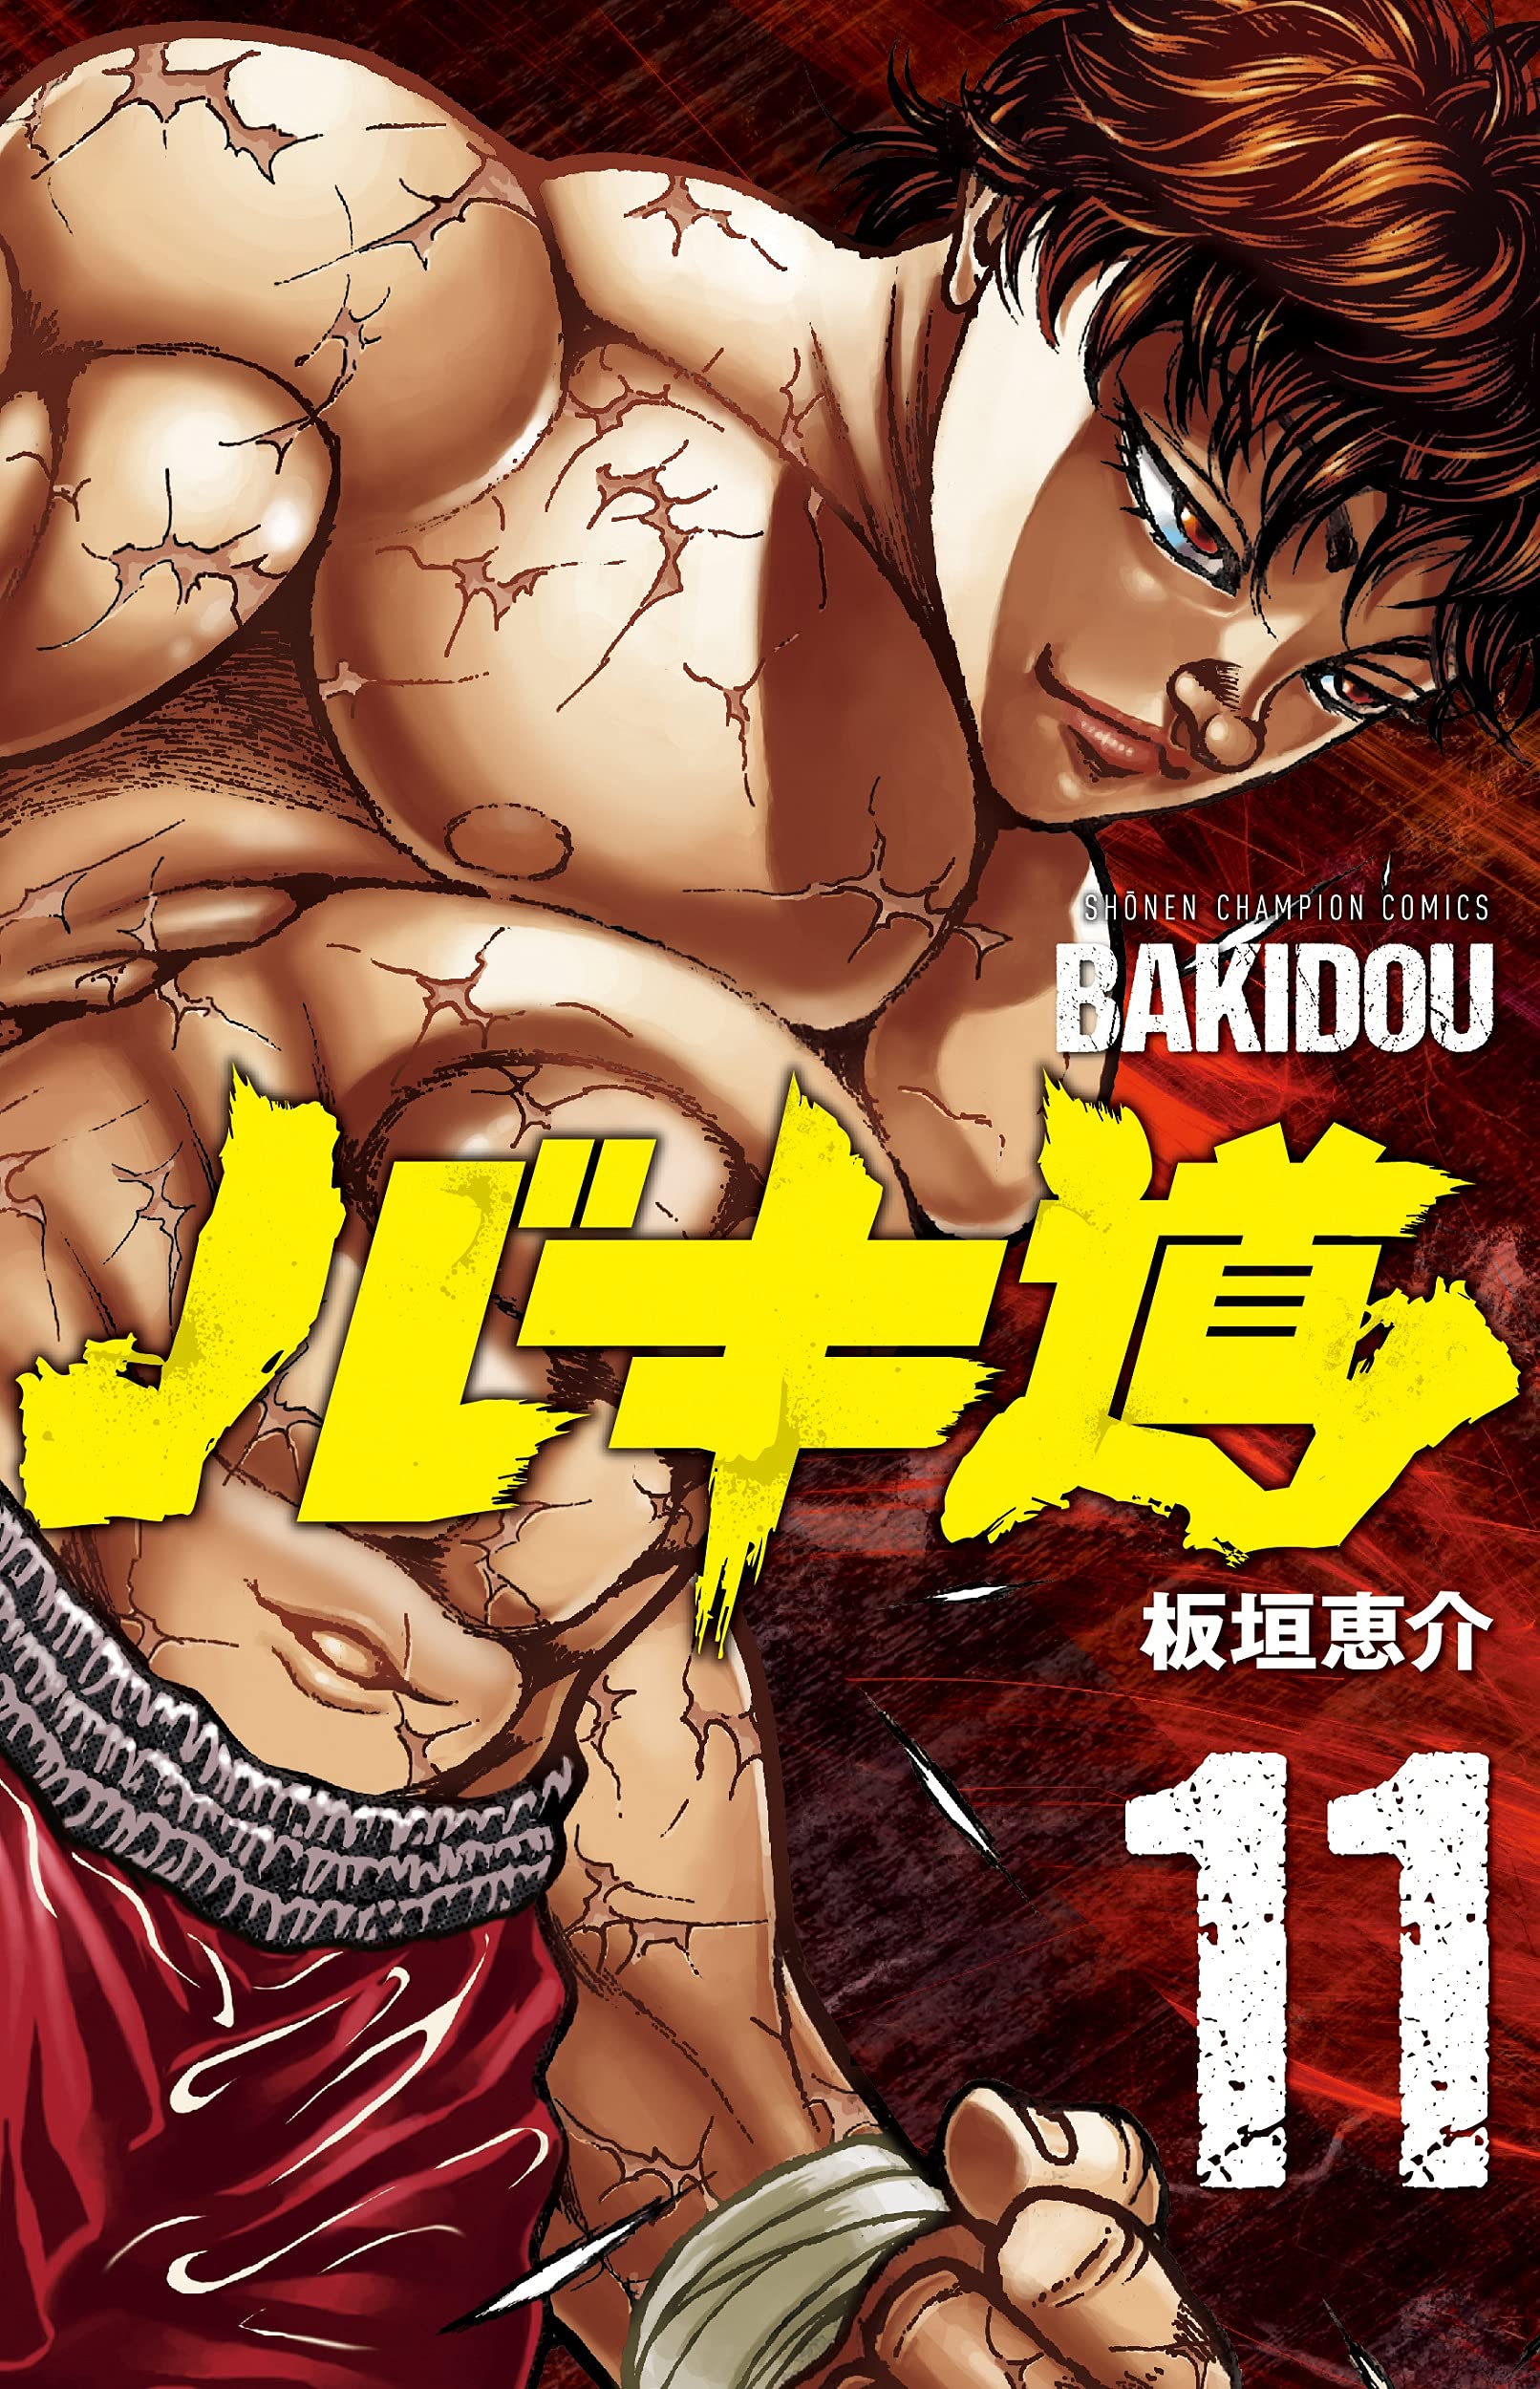 El manga Baki-dou revelo la portada de su volumen #11